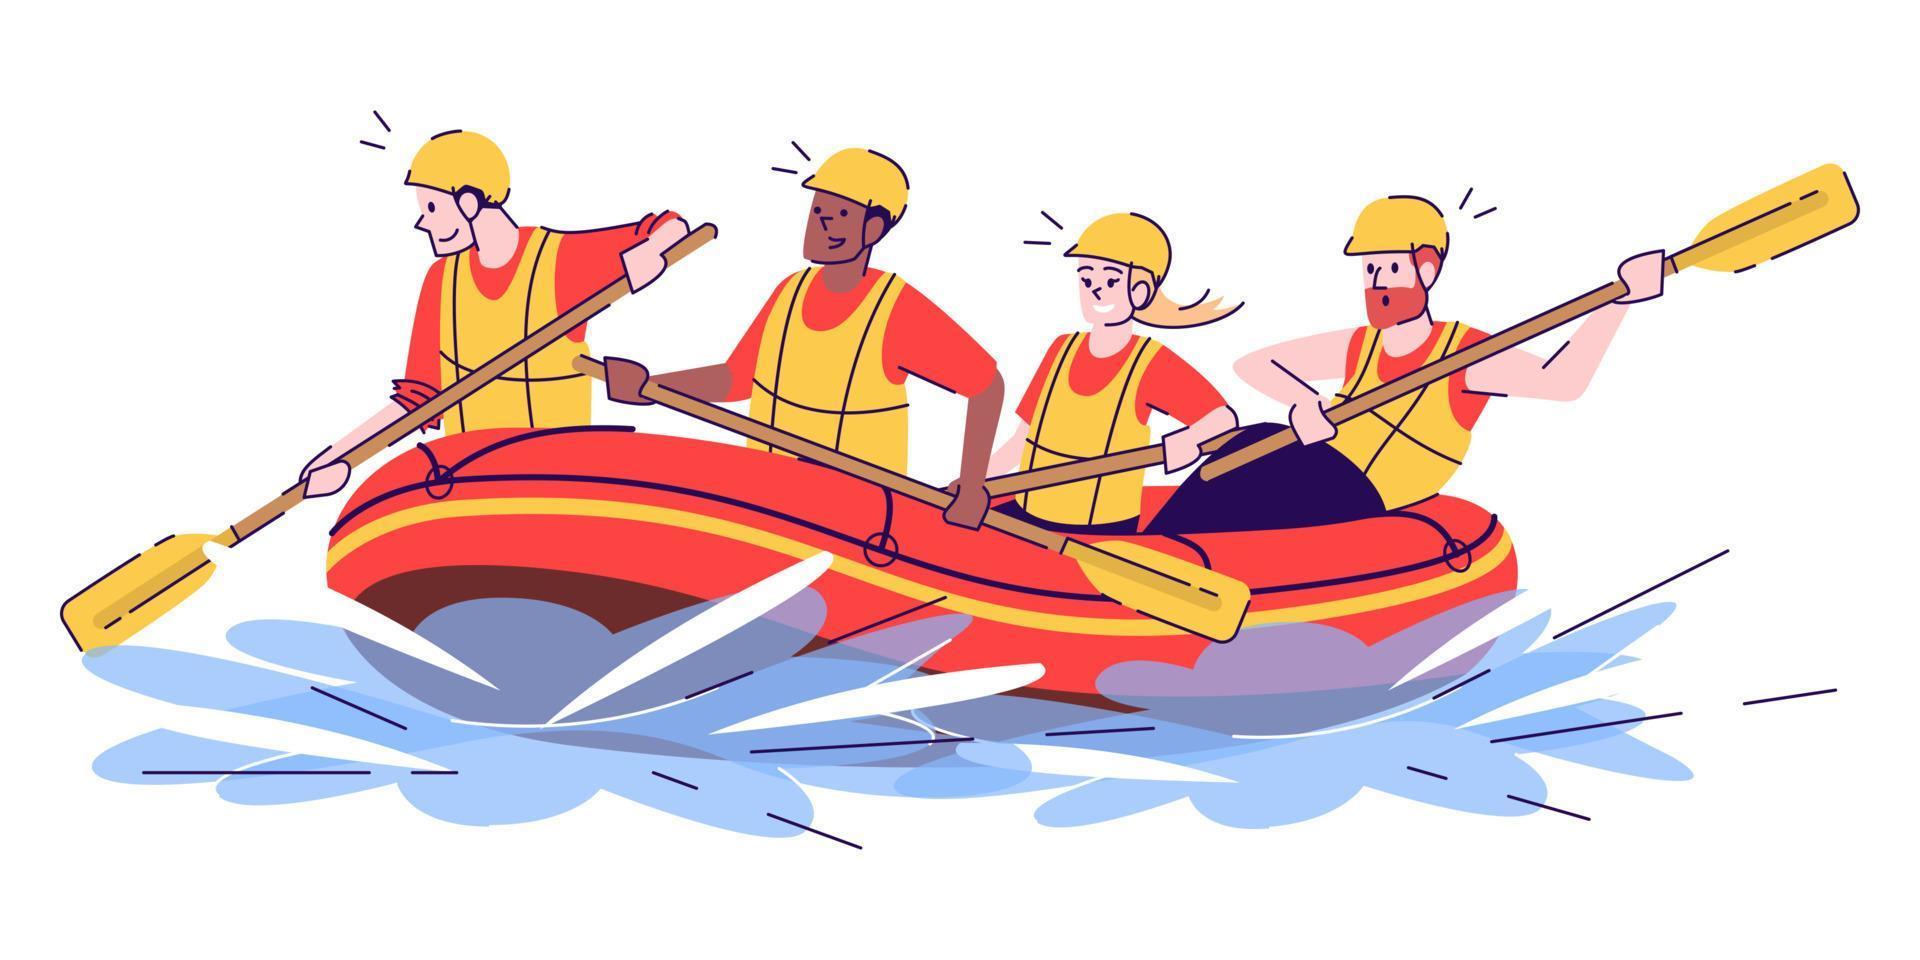 forsränning platt doodle illustration. människor i flotte. vattenaktivitet. extrema sporter. aktivt tidsfördriv i exotiskt land. indonesien turism 2d seriefigur med kontur för kommersiellt bruk vektor